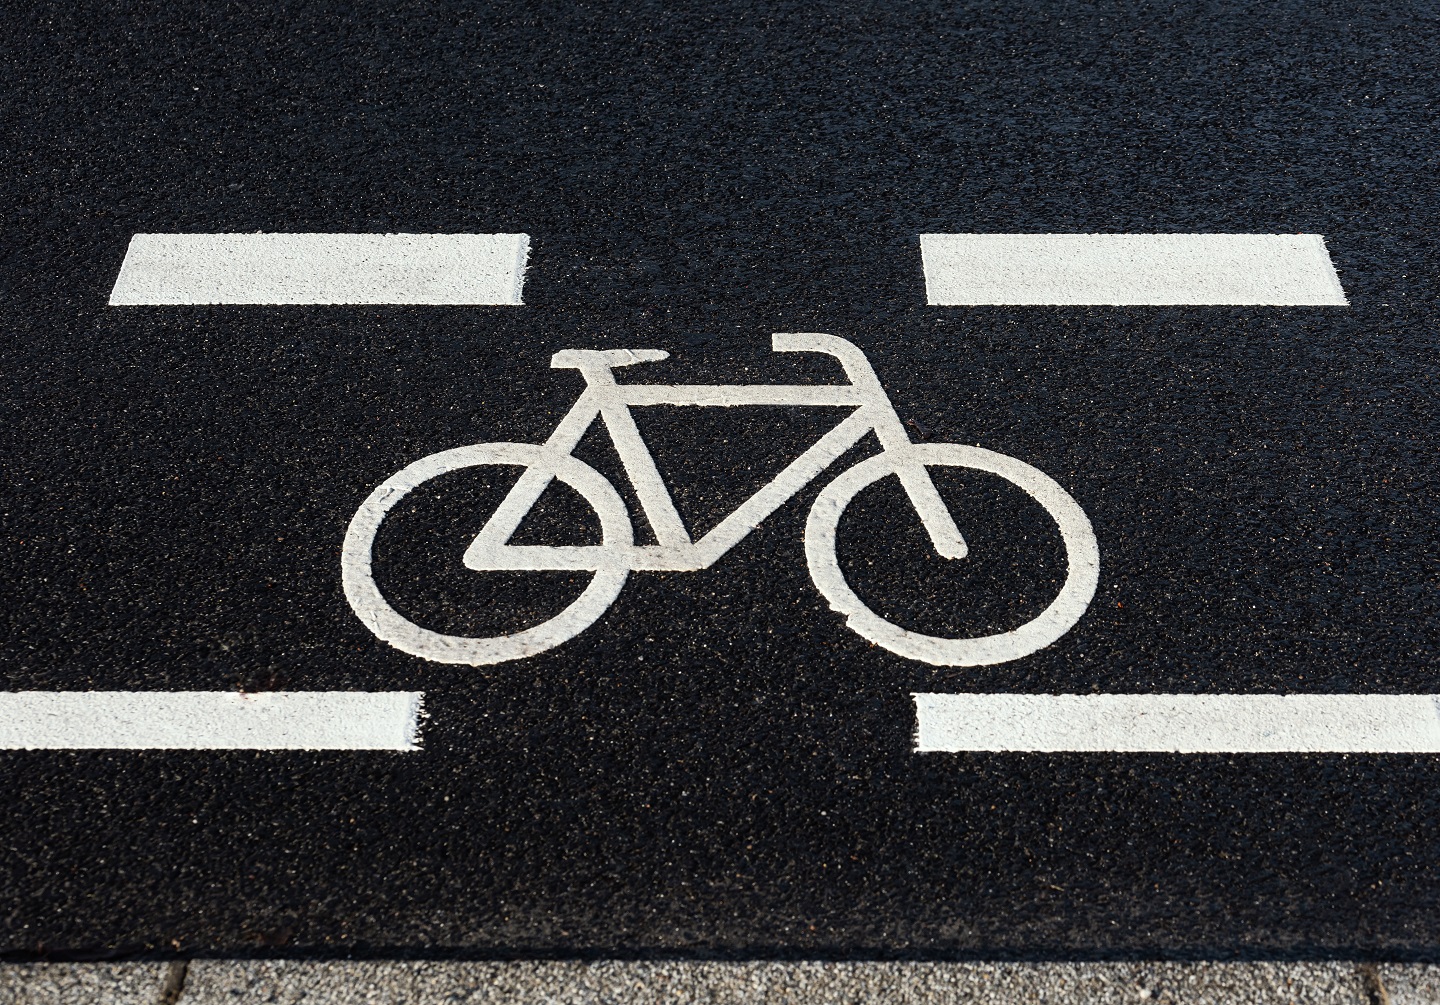 Zu sehen ist ein Fahrradsymbol aufgemalt auf einer schwarzen Straße